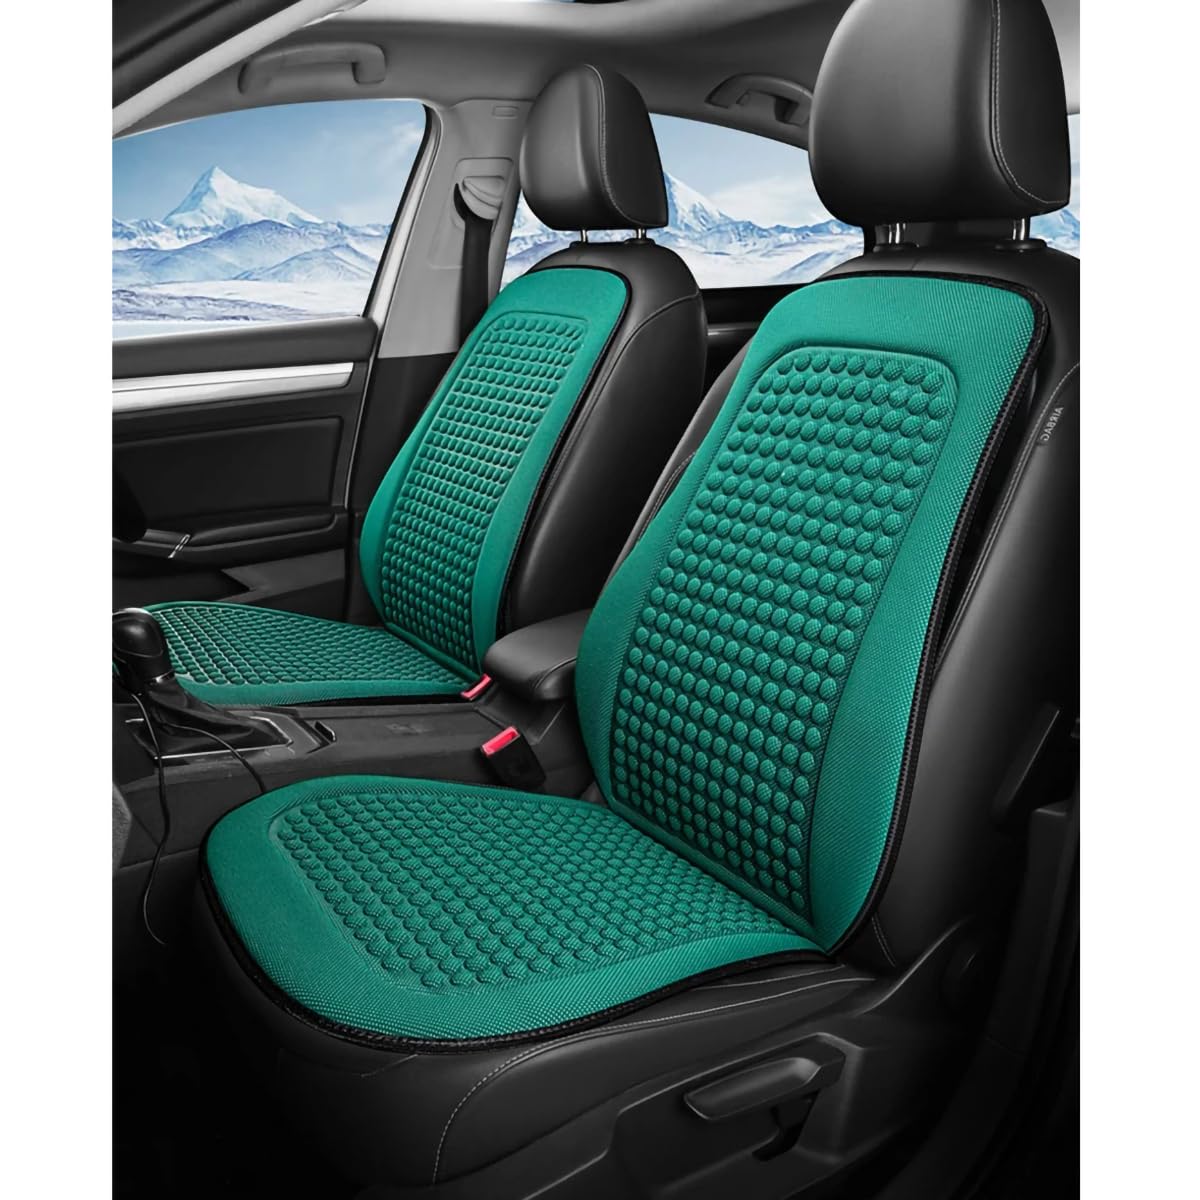 Spulhc Autositzbezug für Land Rover Range Rover Evoque 2015 2014 2013 2012, kühles Sitzkissen aus Eisseide, kühlendes/atmungsaktives Kissen,B-green-2 set von Spulhc